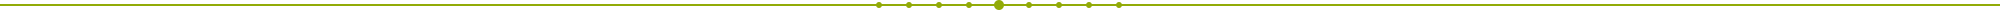 imagen de puntos temporales en verde usado como separador